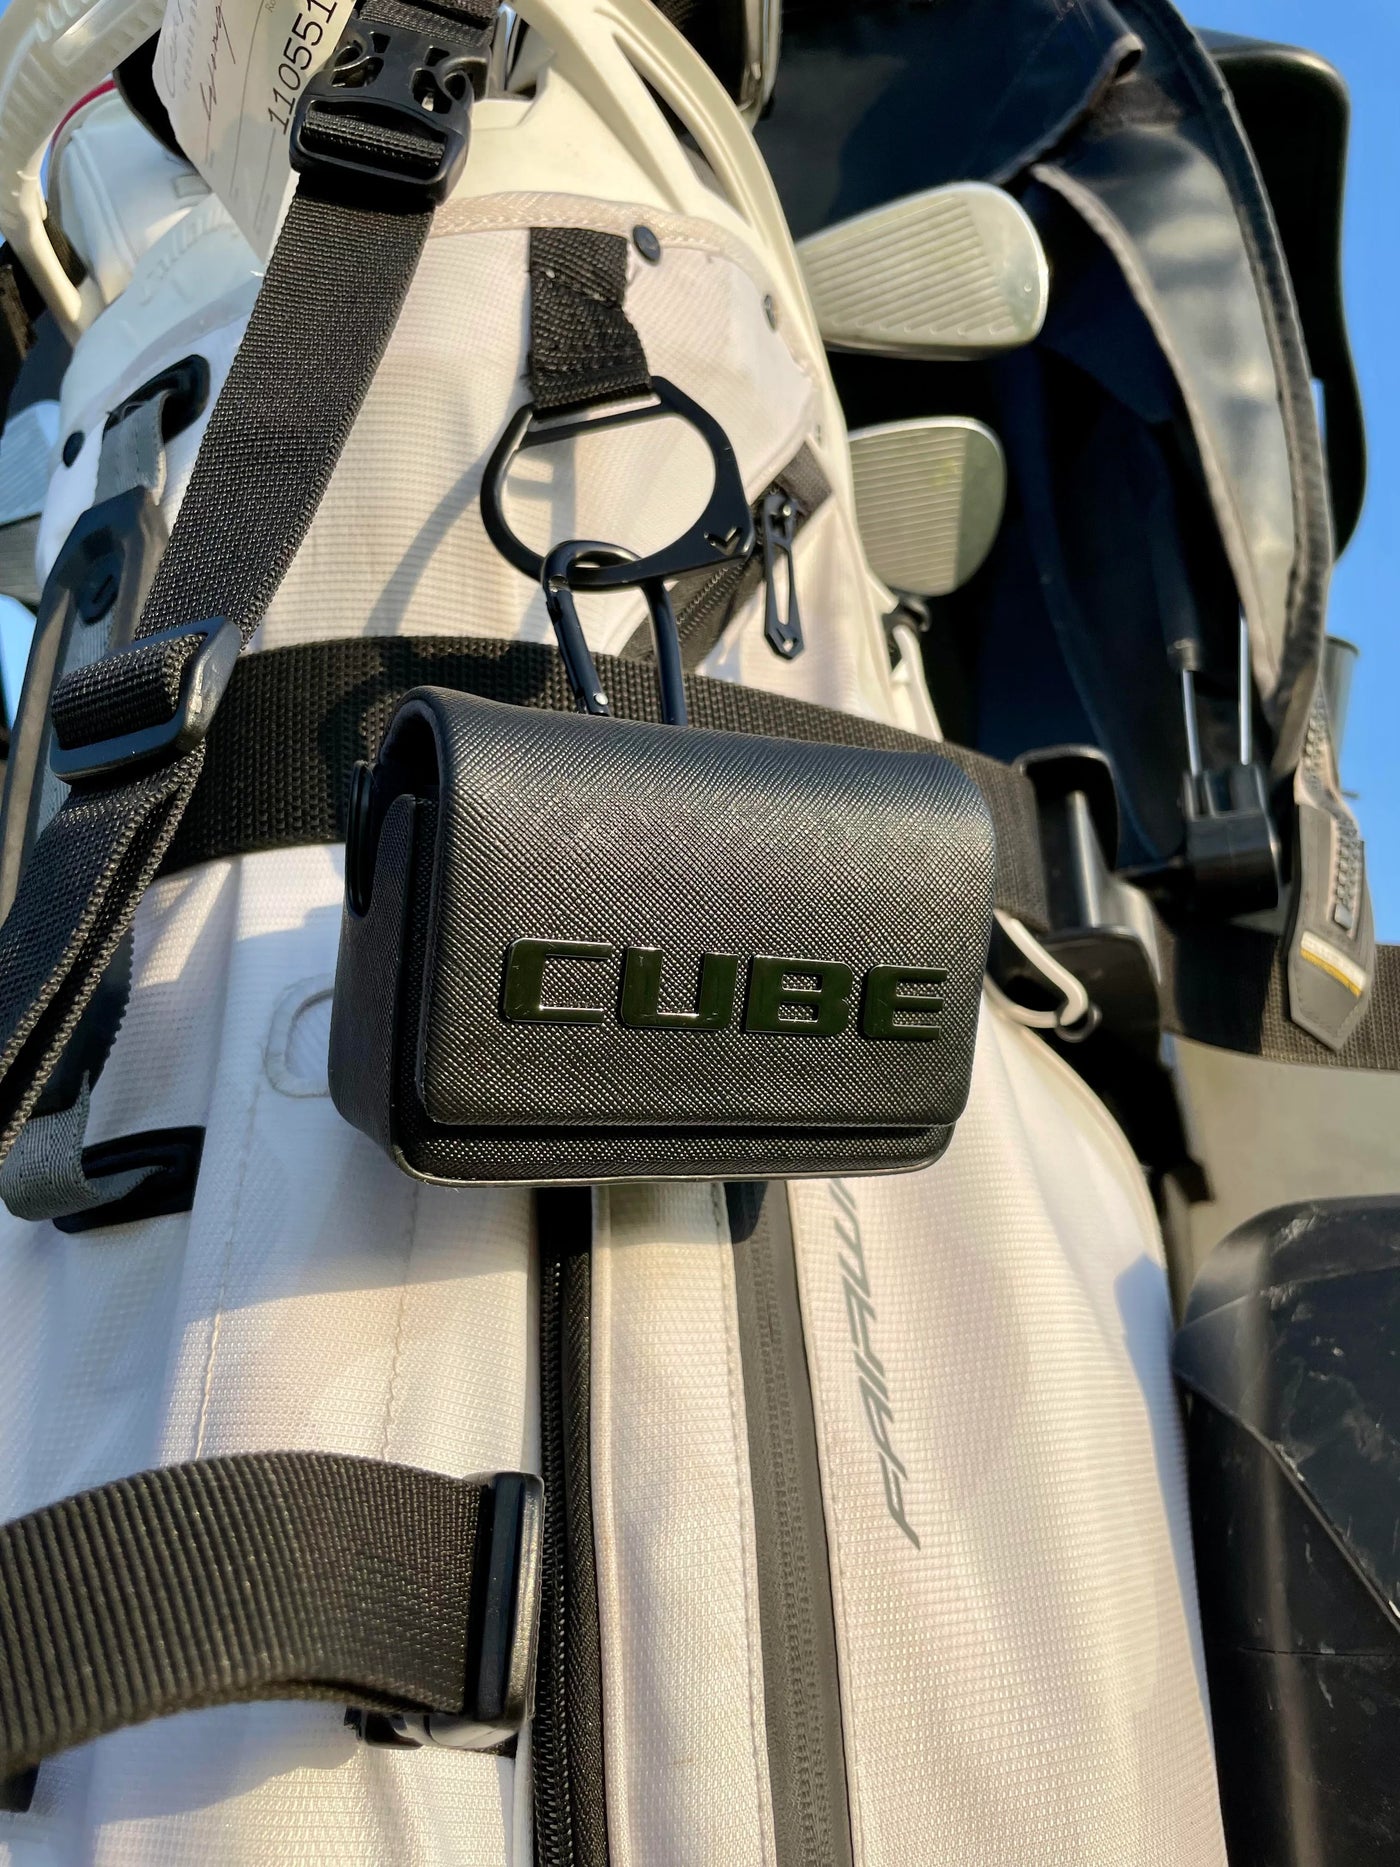 CaddyTalk CUBE Laser Rangefinder + Bonus Silicone Case